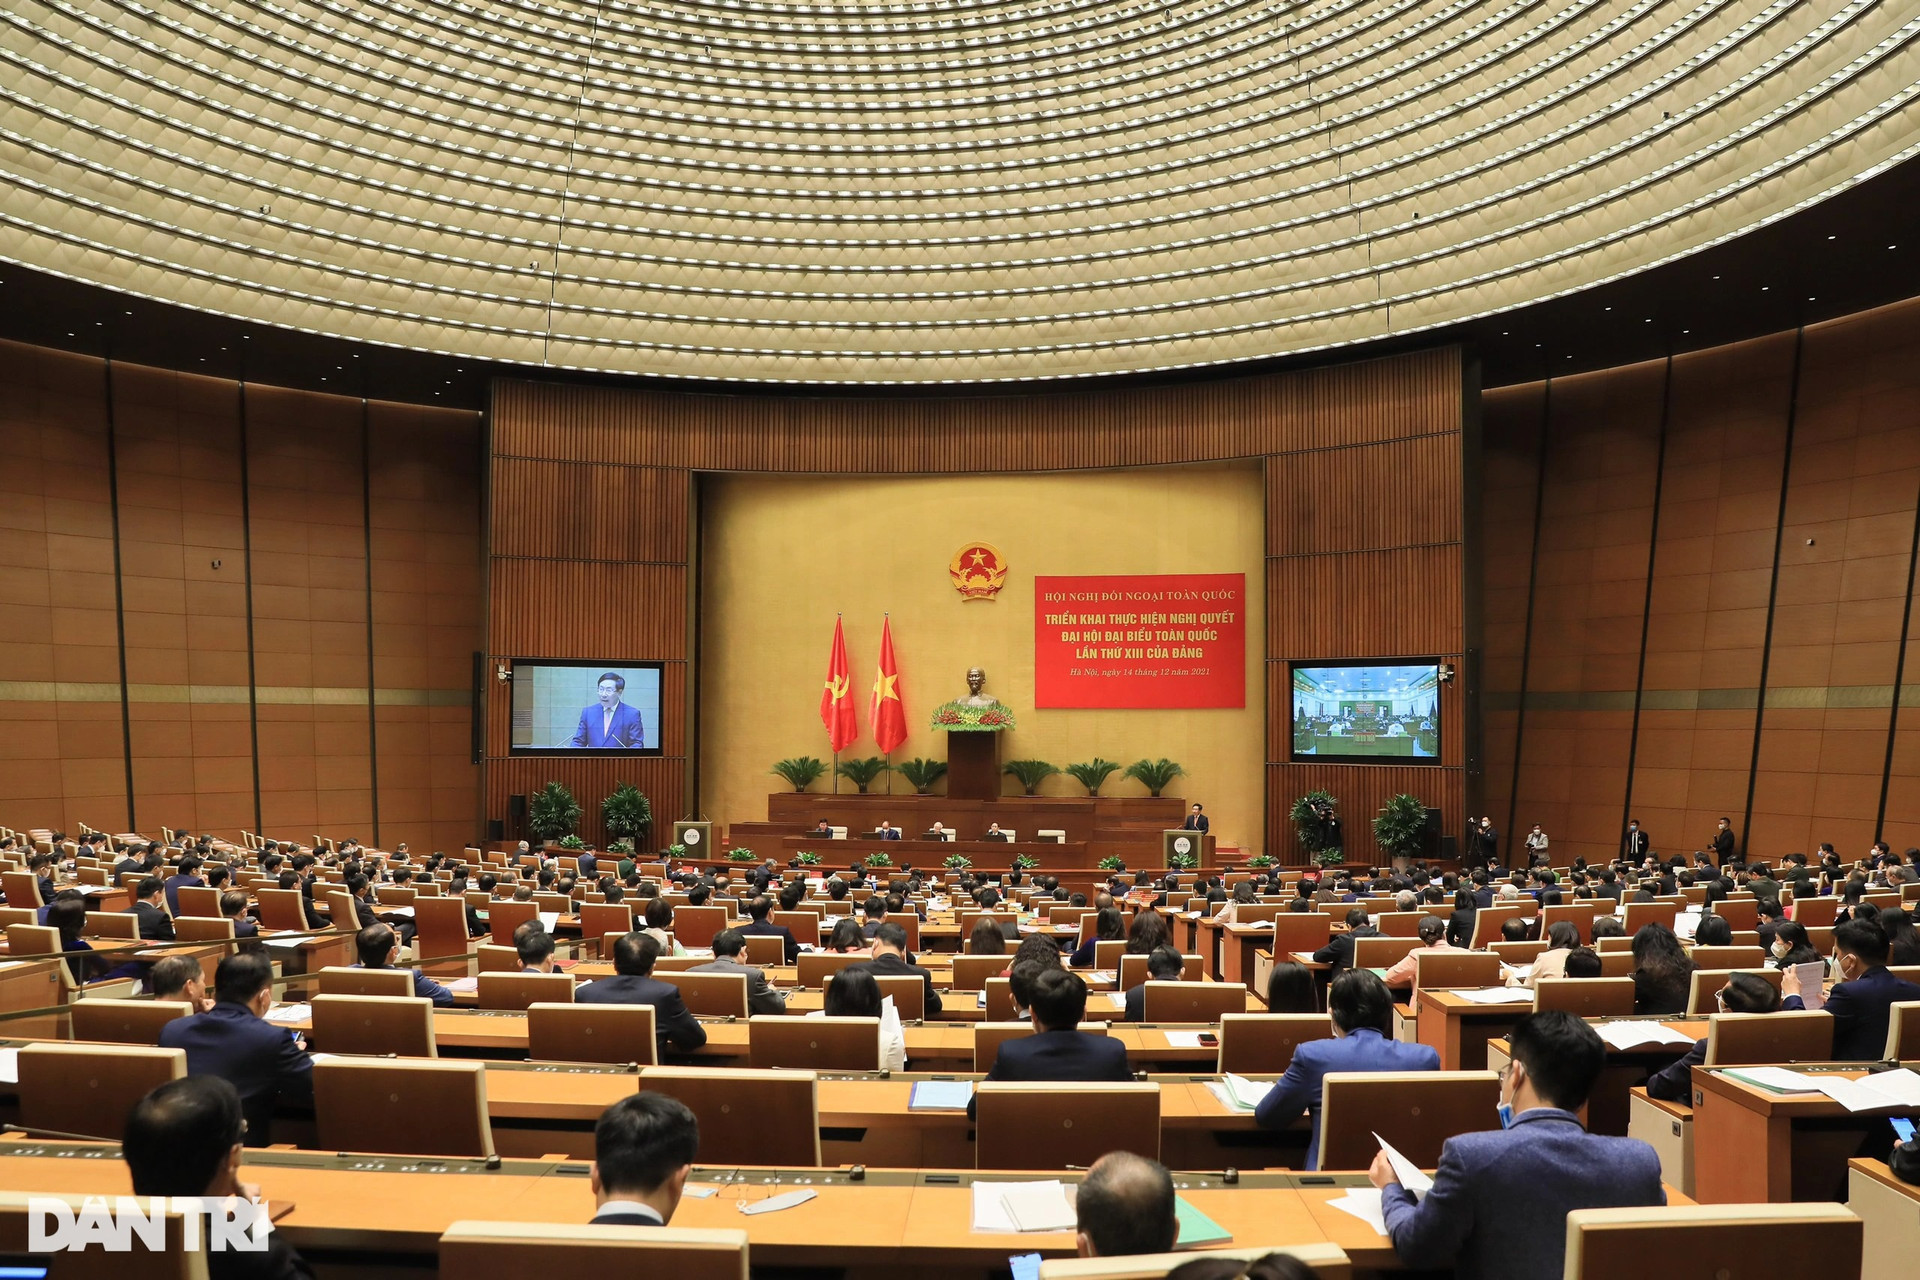 Toàn cảnh Hội nghị Đối ngoại toàn quốc khai mạc trọng thể tại Hà Nội - 7